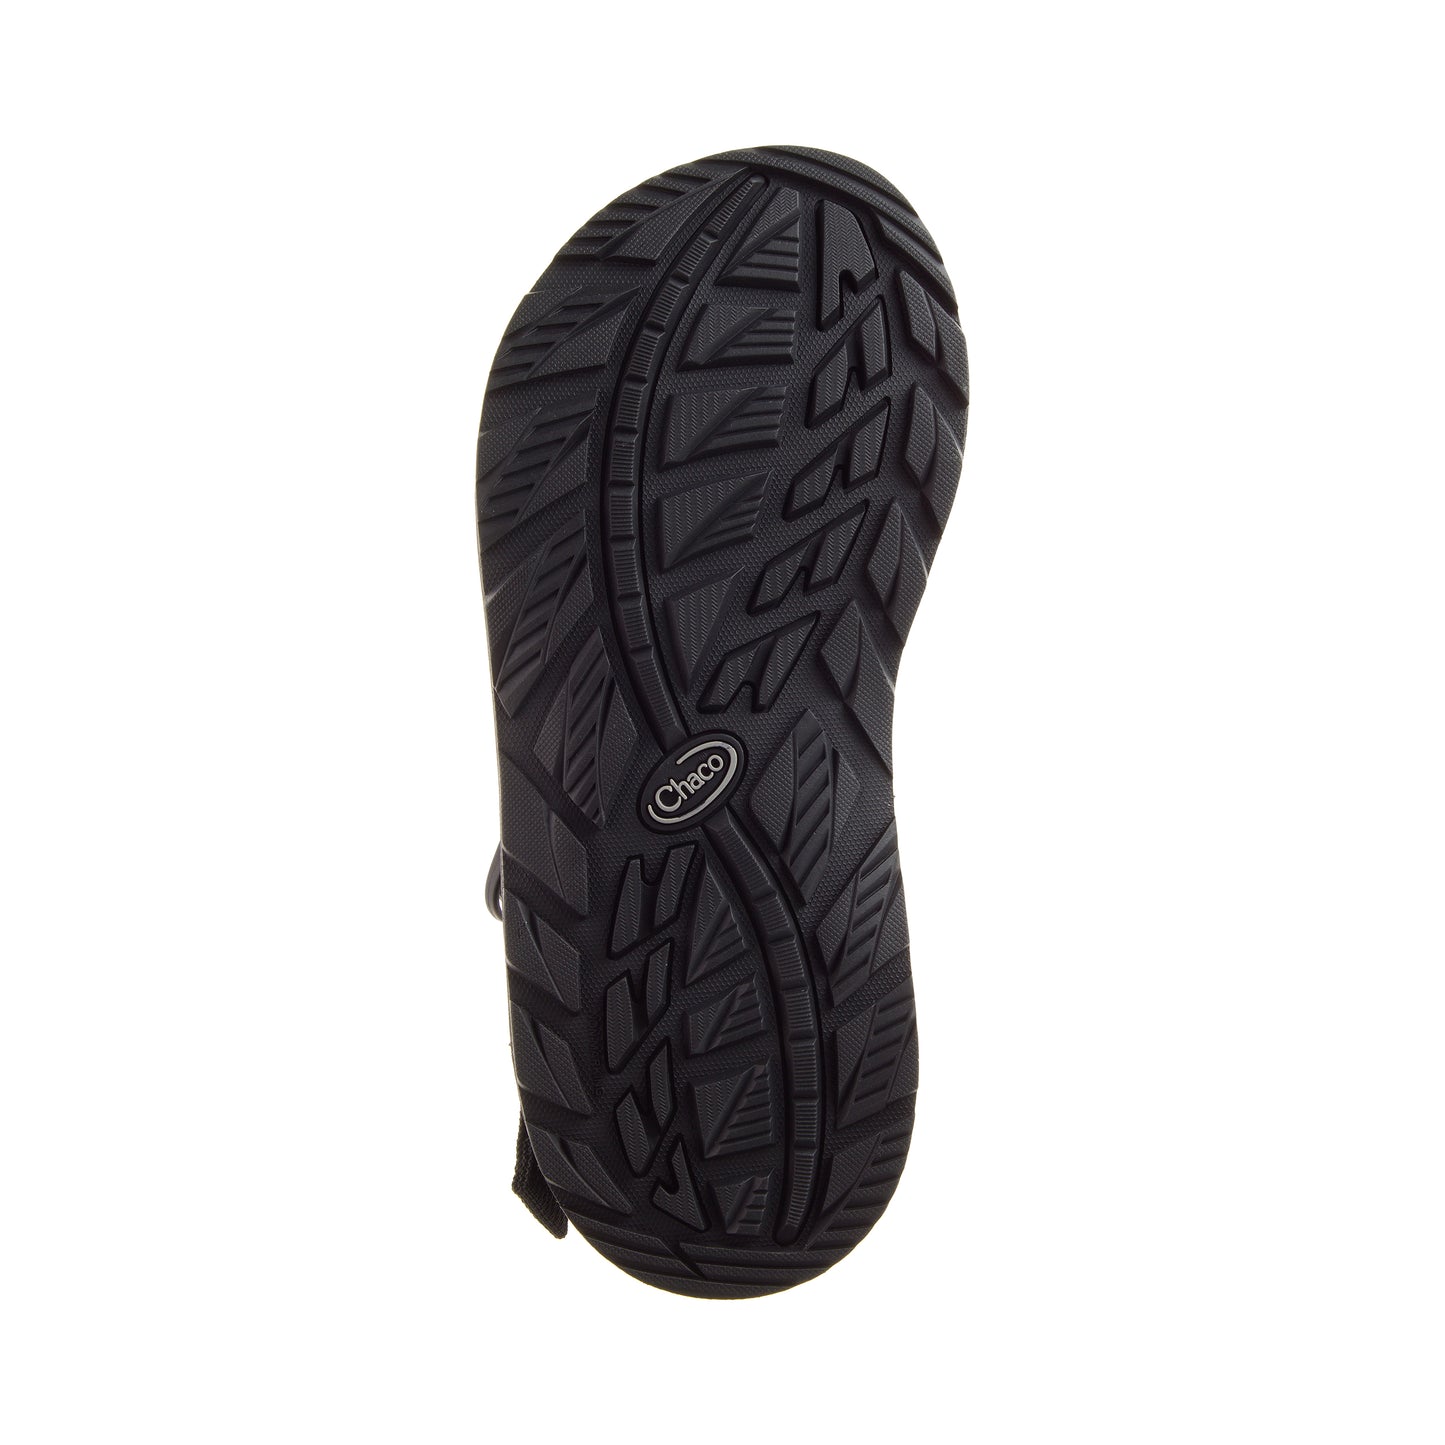 Men's Z/1® Classic Sandal - Black- Regular (D)